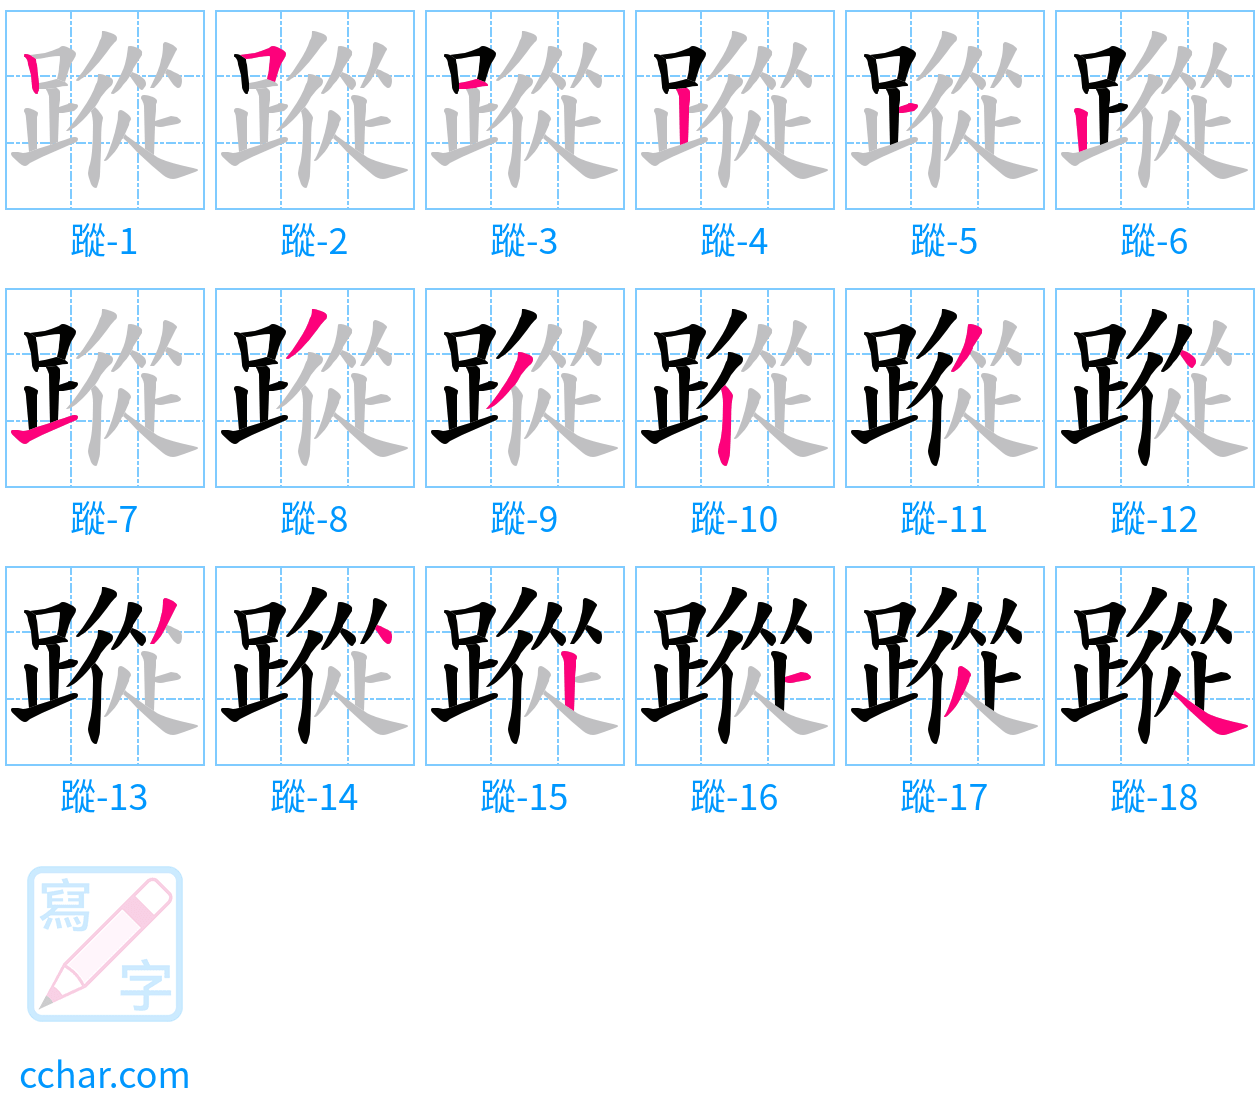 蹤 stroke order step-by-step diagram